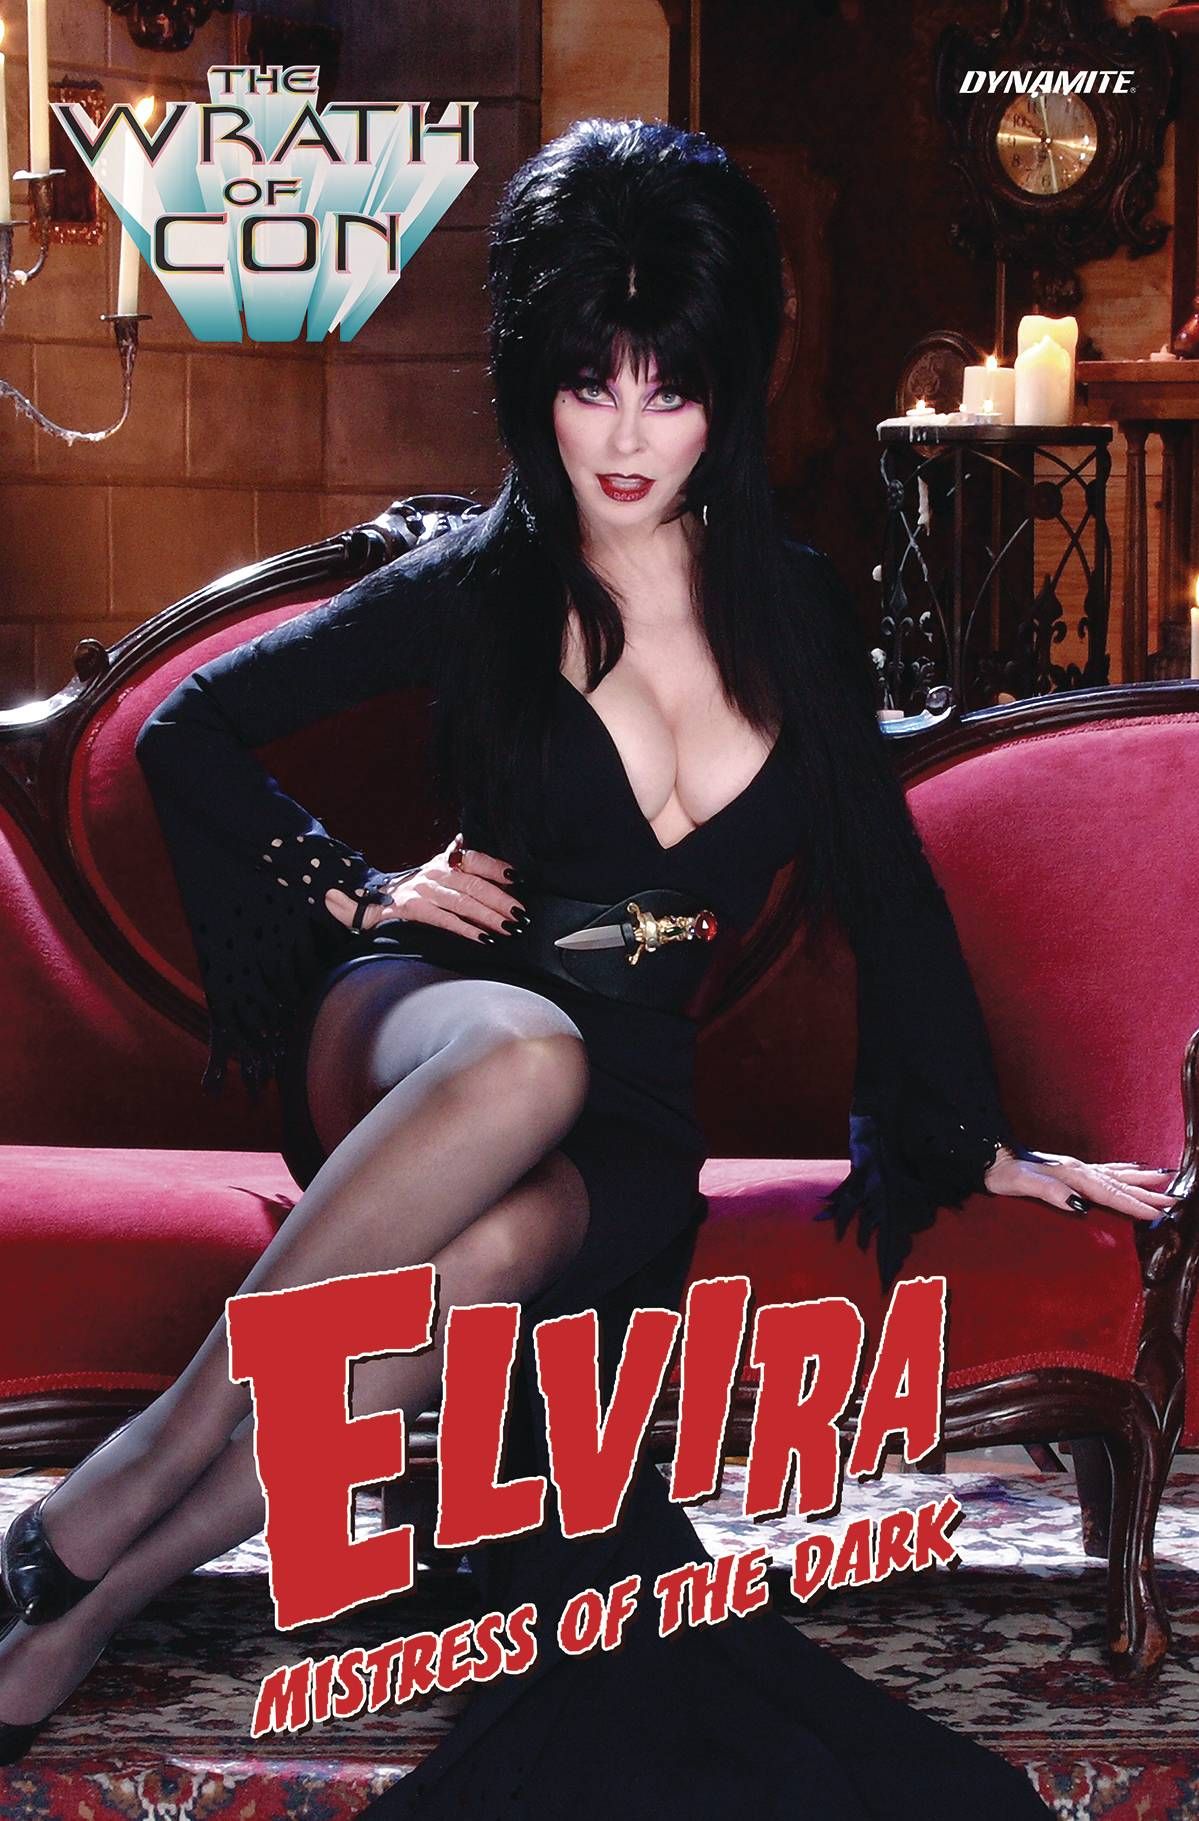 Elvira: Wrath of Con Comic